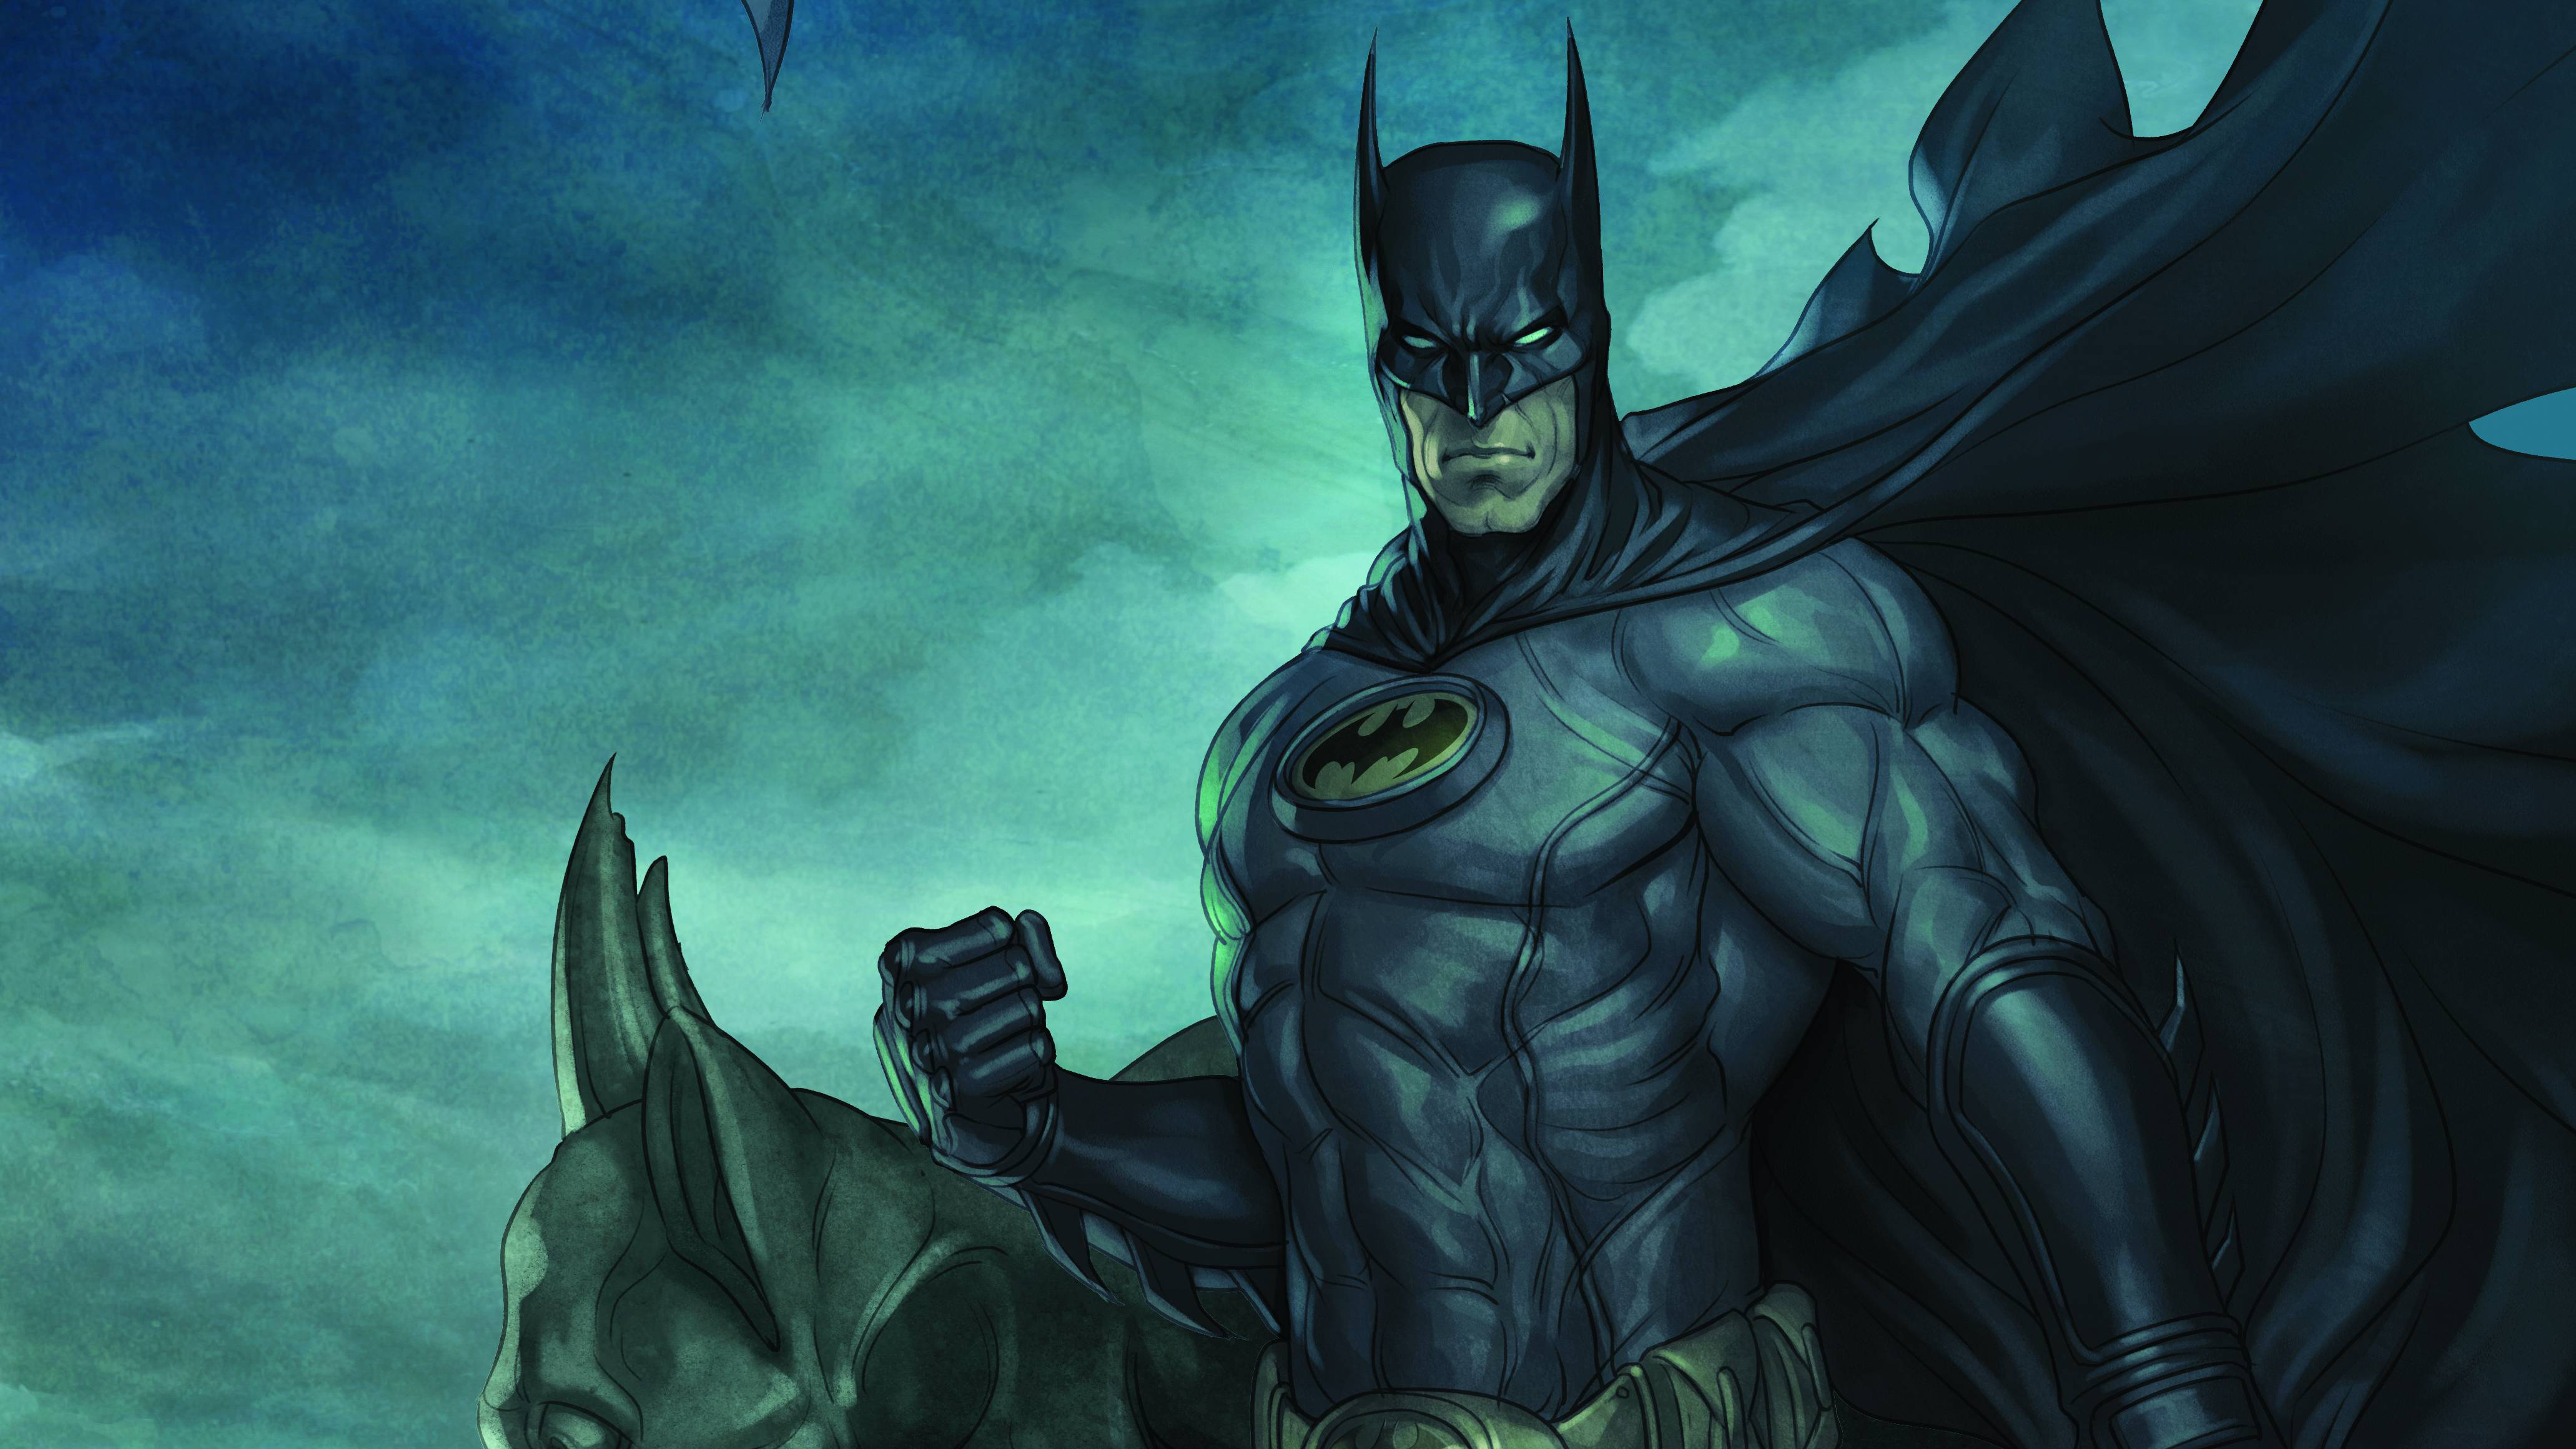 Batman 4k Portrait, HD Superheroes, 4k Wallpapers, Images ...